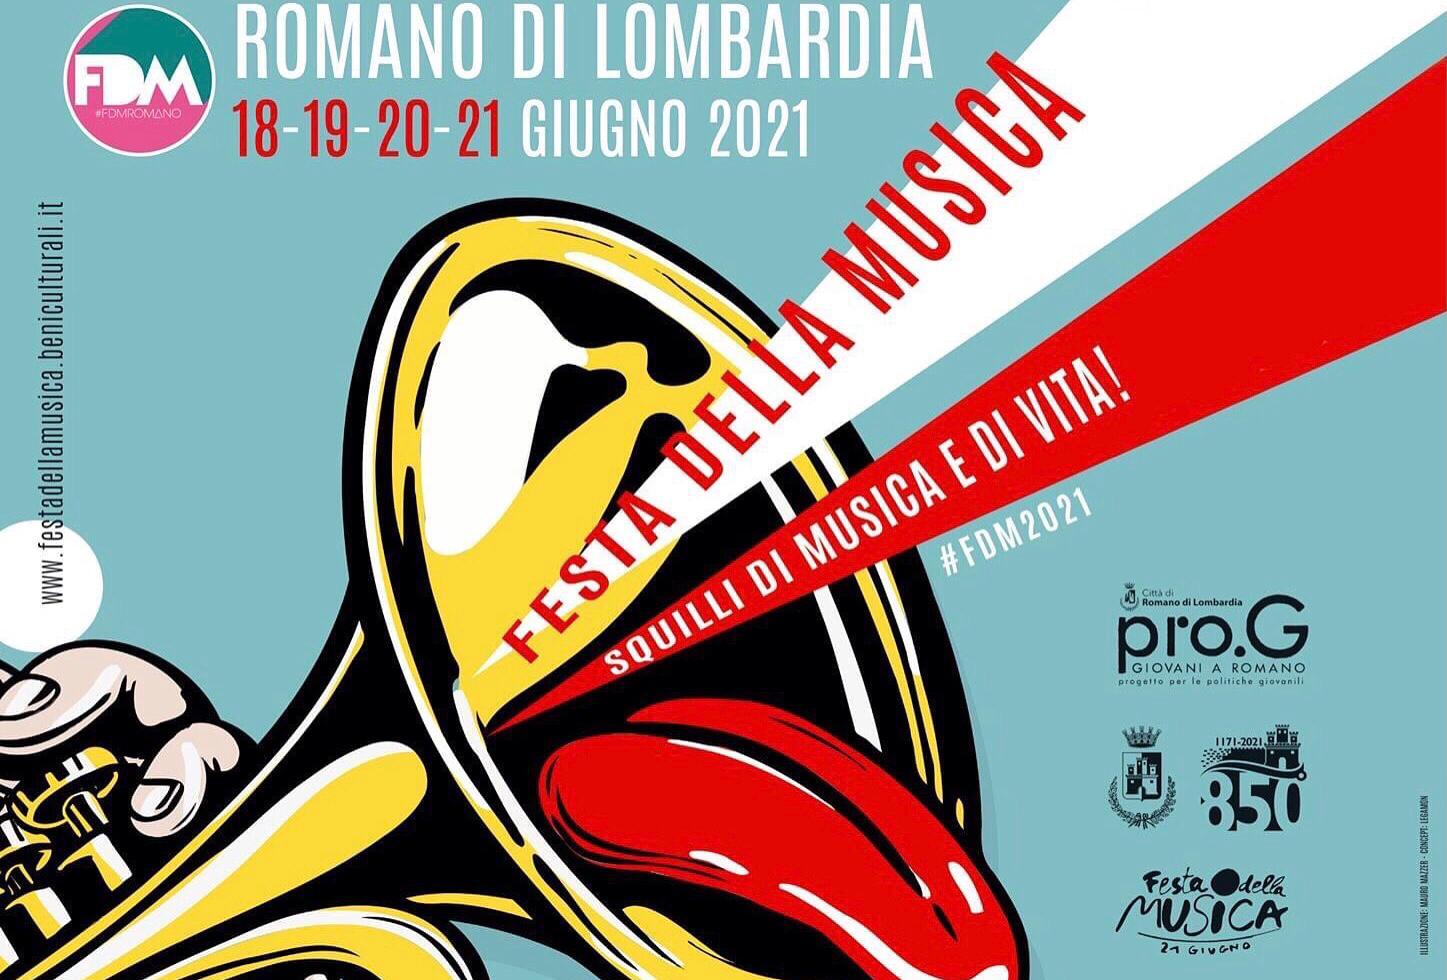 “Festa Della Musica Romano – Squilli di musica e di vita” A Romano di Lombardia, dal 18 al 21 giugno, 4 giornate per il ritorno della musica dal vivo!